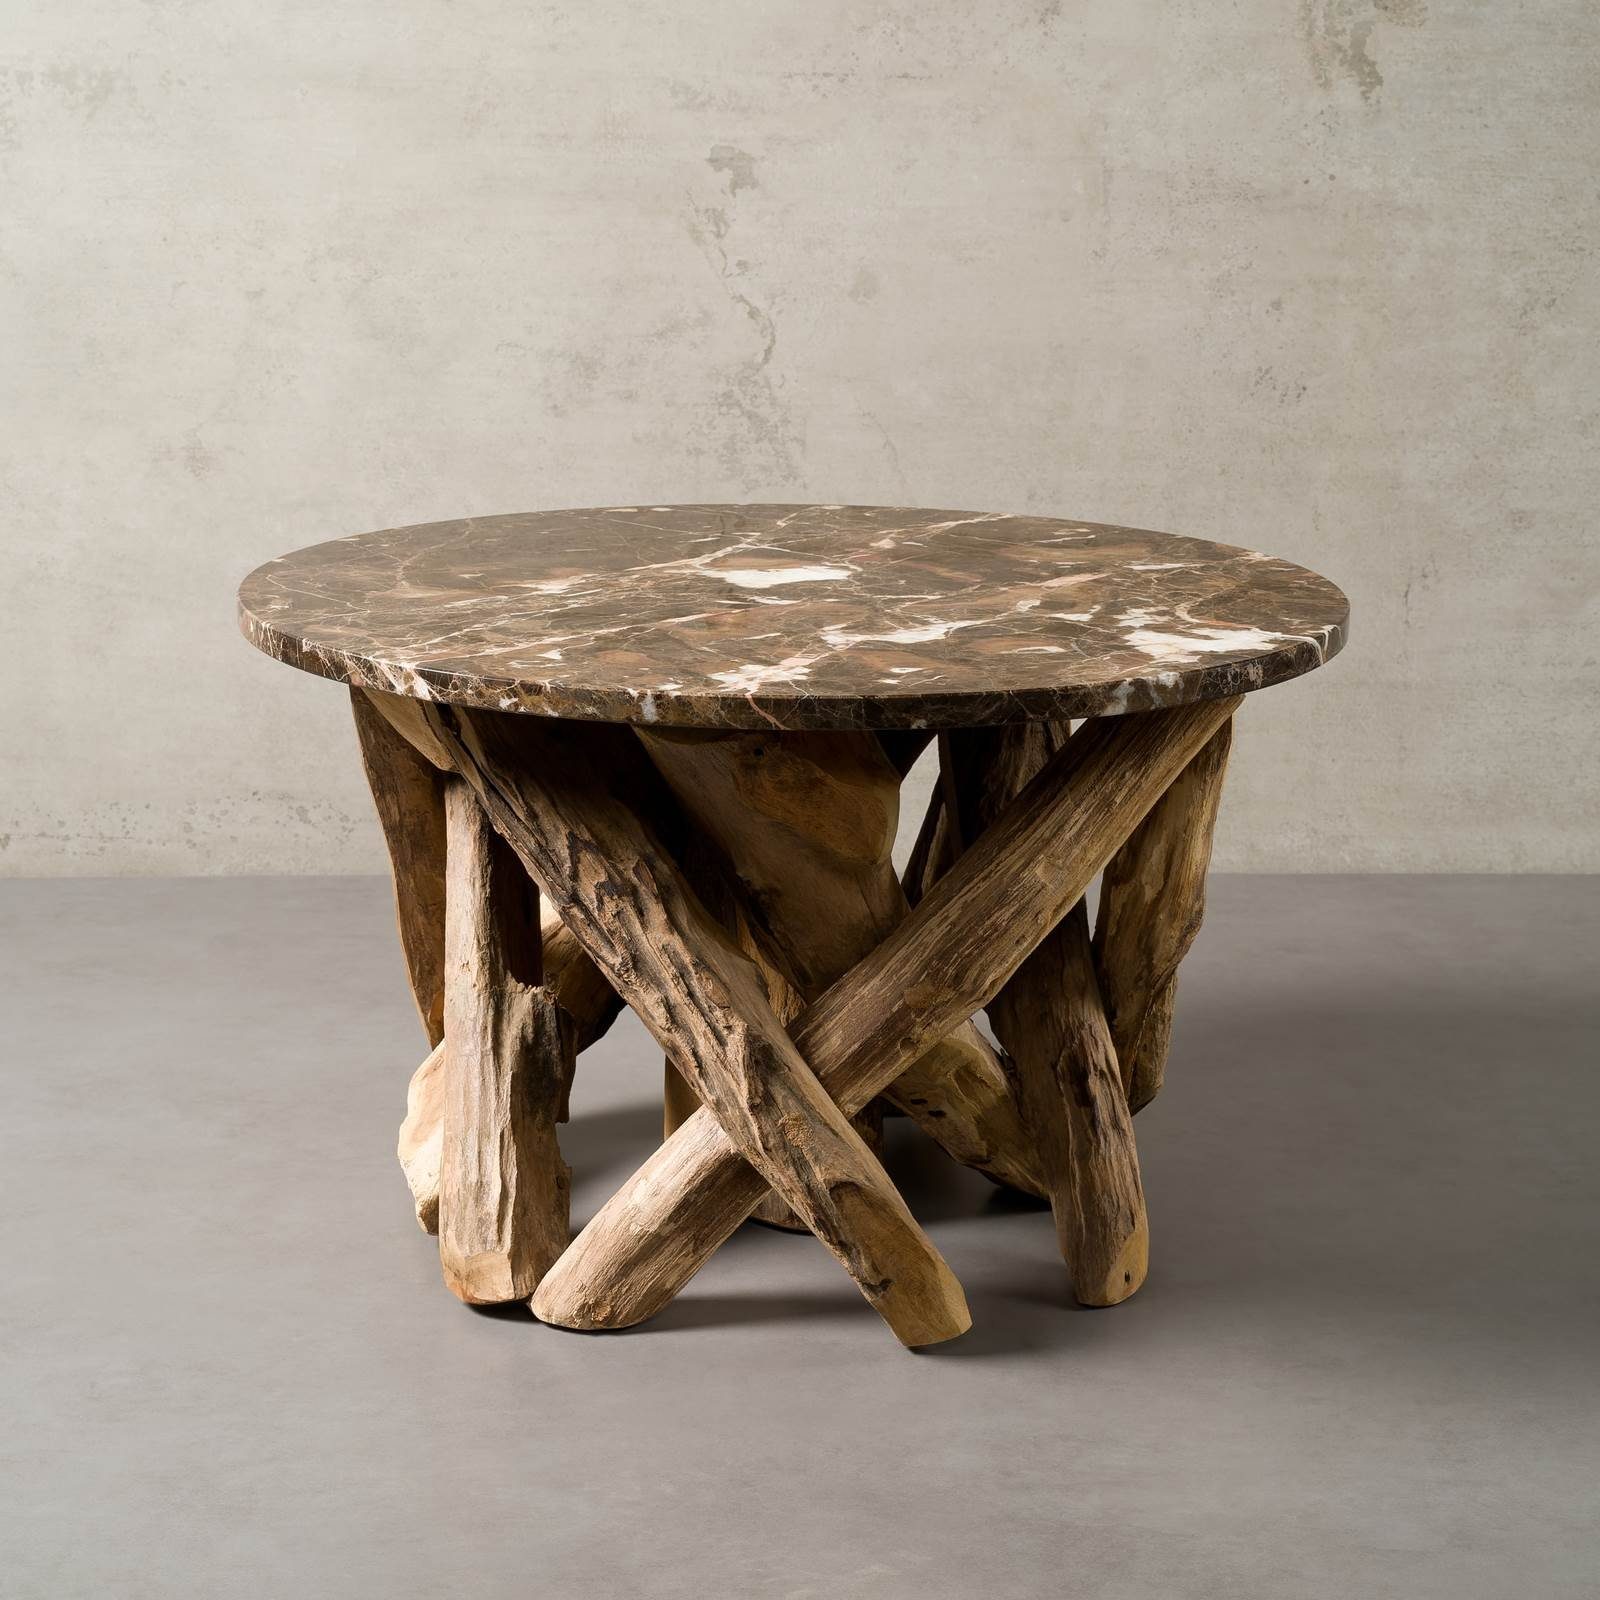 MAGNA Atelier Couchtisch LAKE TAHOE mit Marmor Tischplatte, Sofatisch rund, Wohnzimmertisch, Teakholz Gestell, 70x42cm